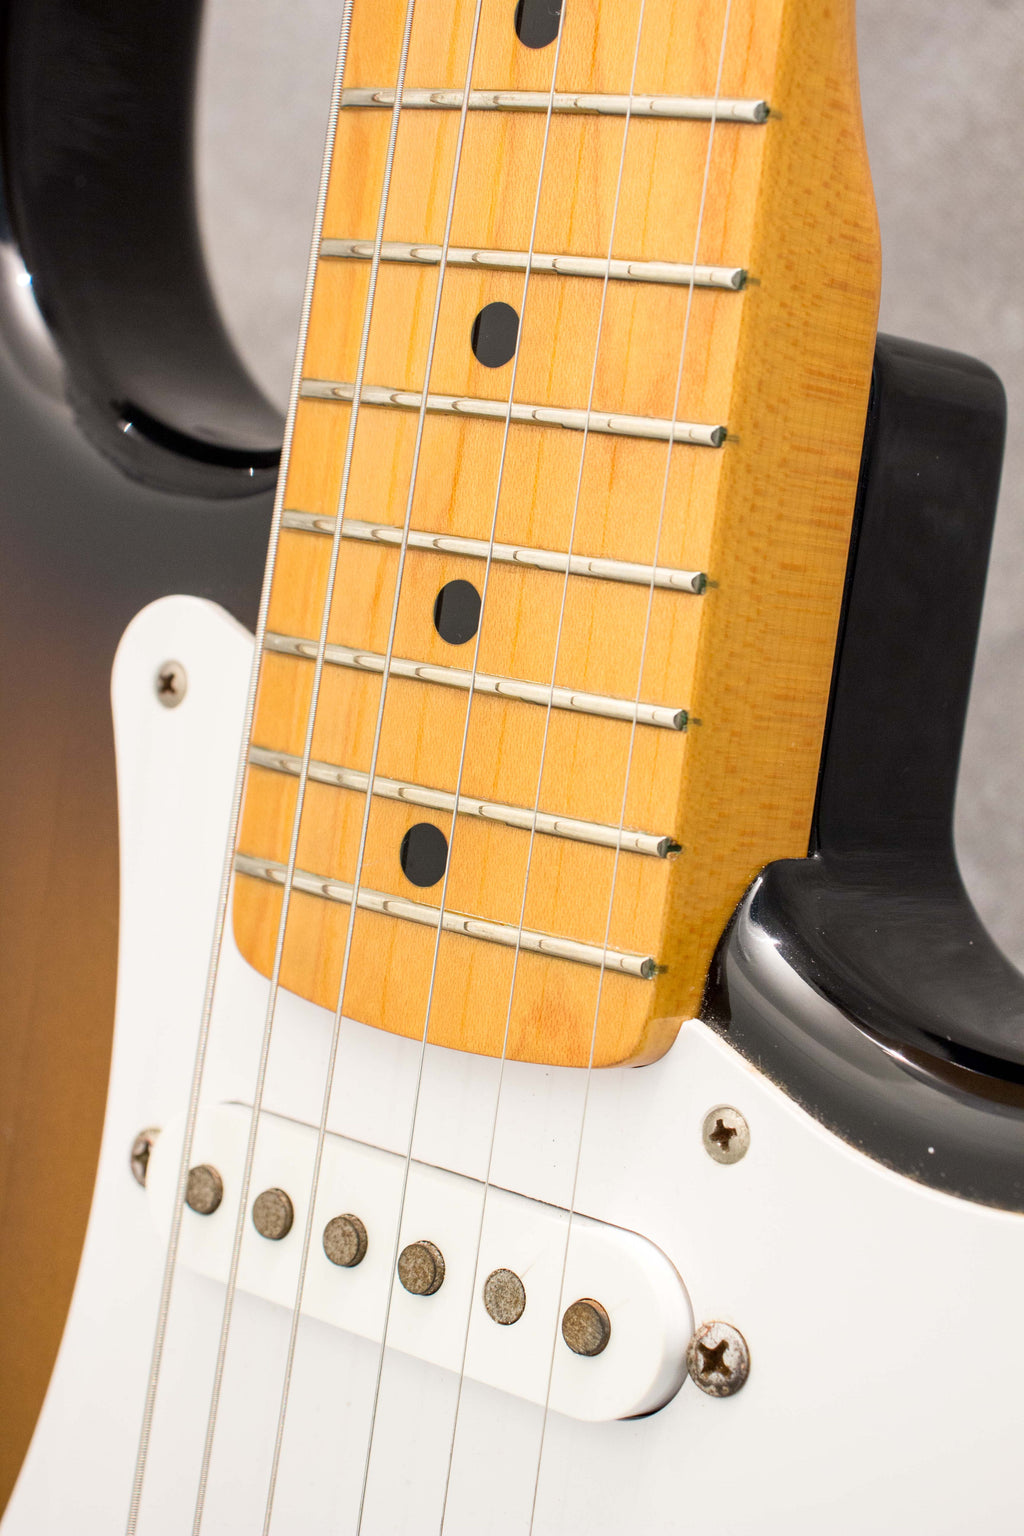 Fender Japan '57 Stratocaster Sunburst ST57-58US 2000